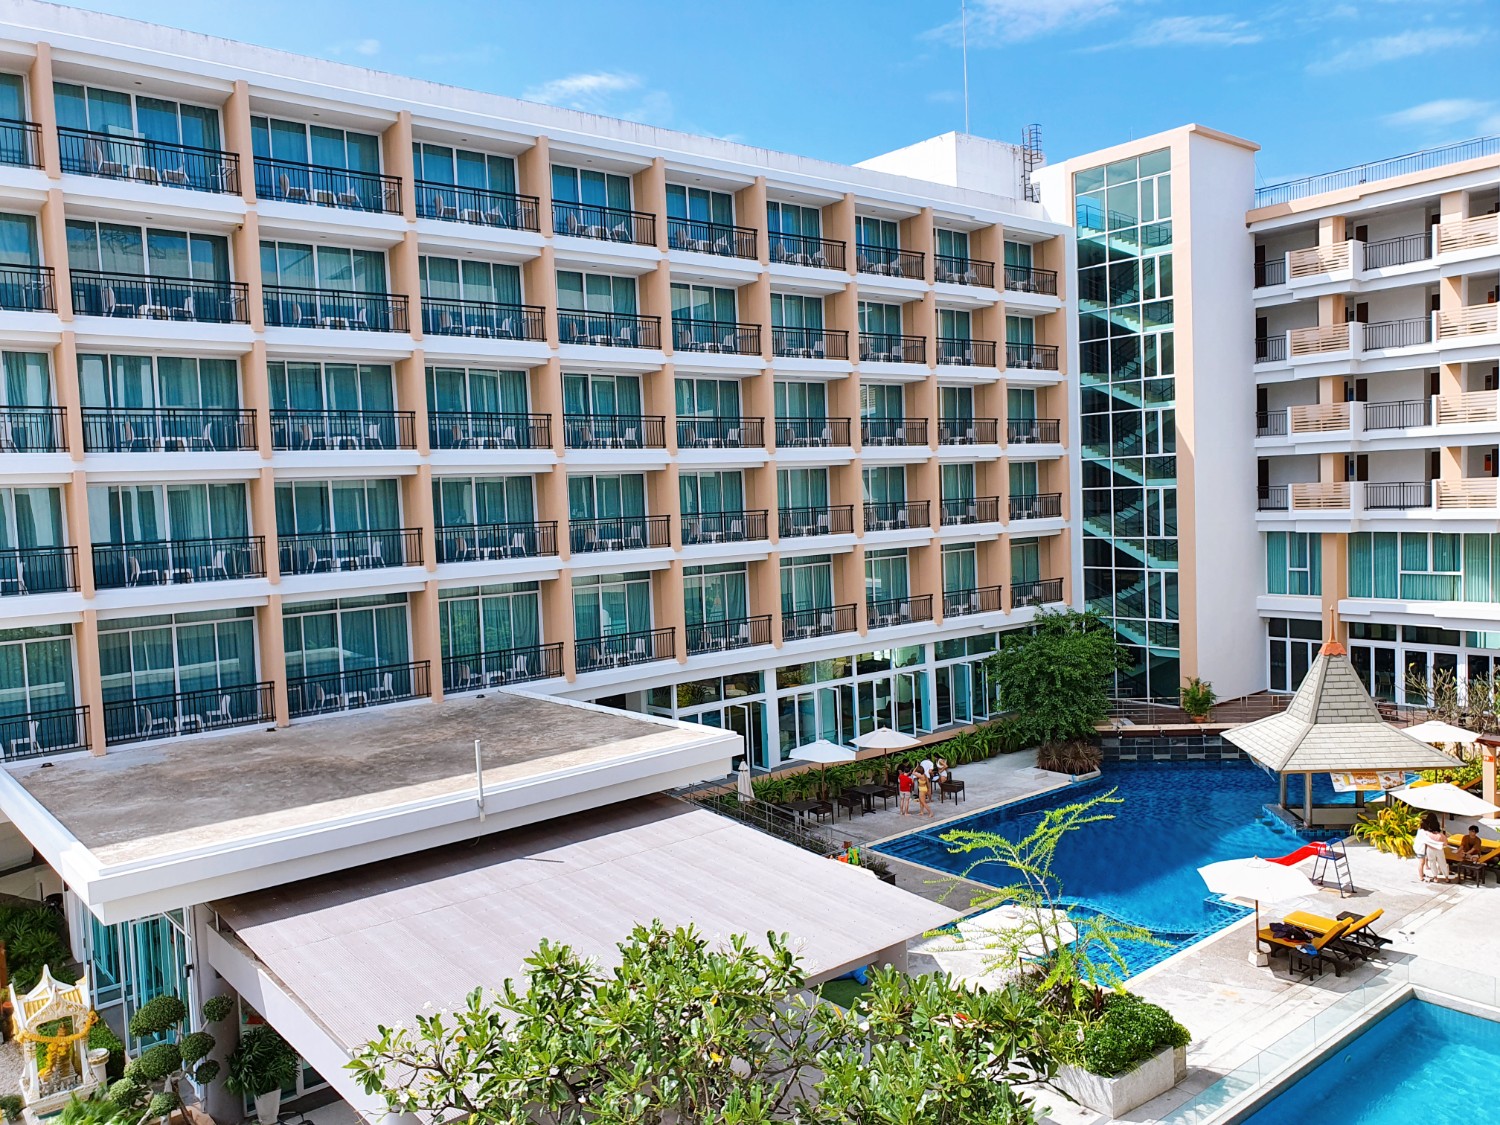 โรงแรม fx hotel pattaya thai